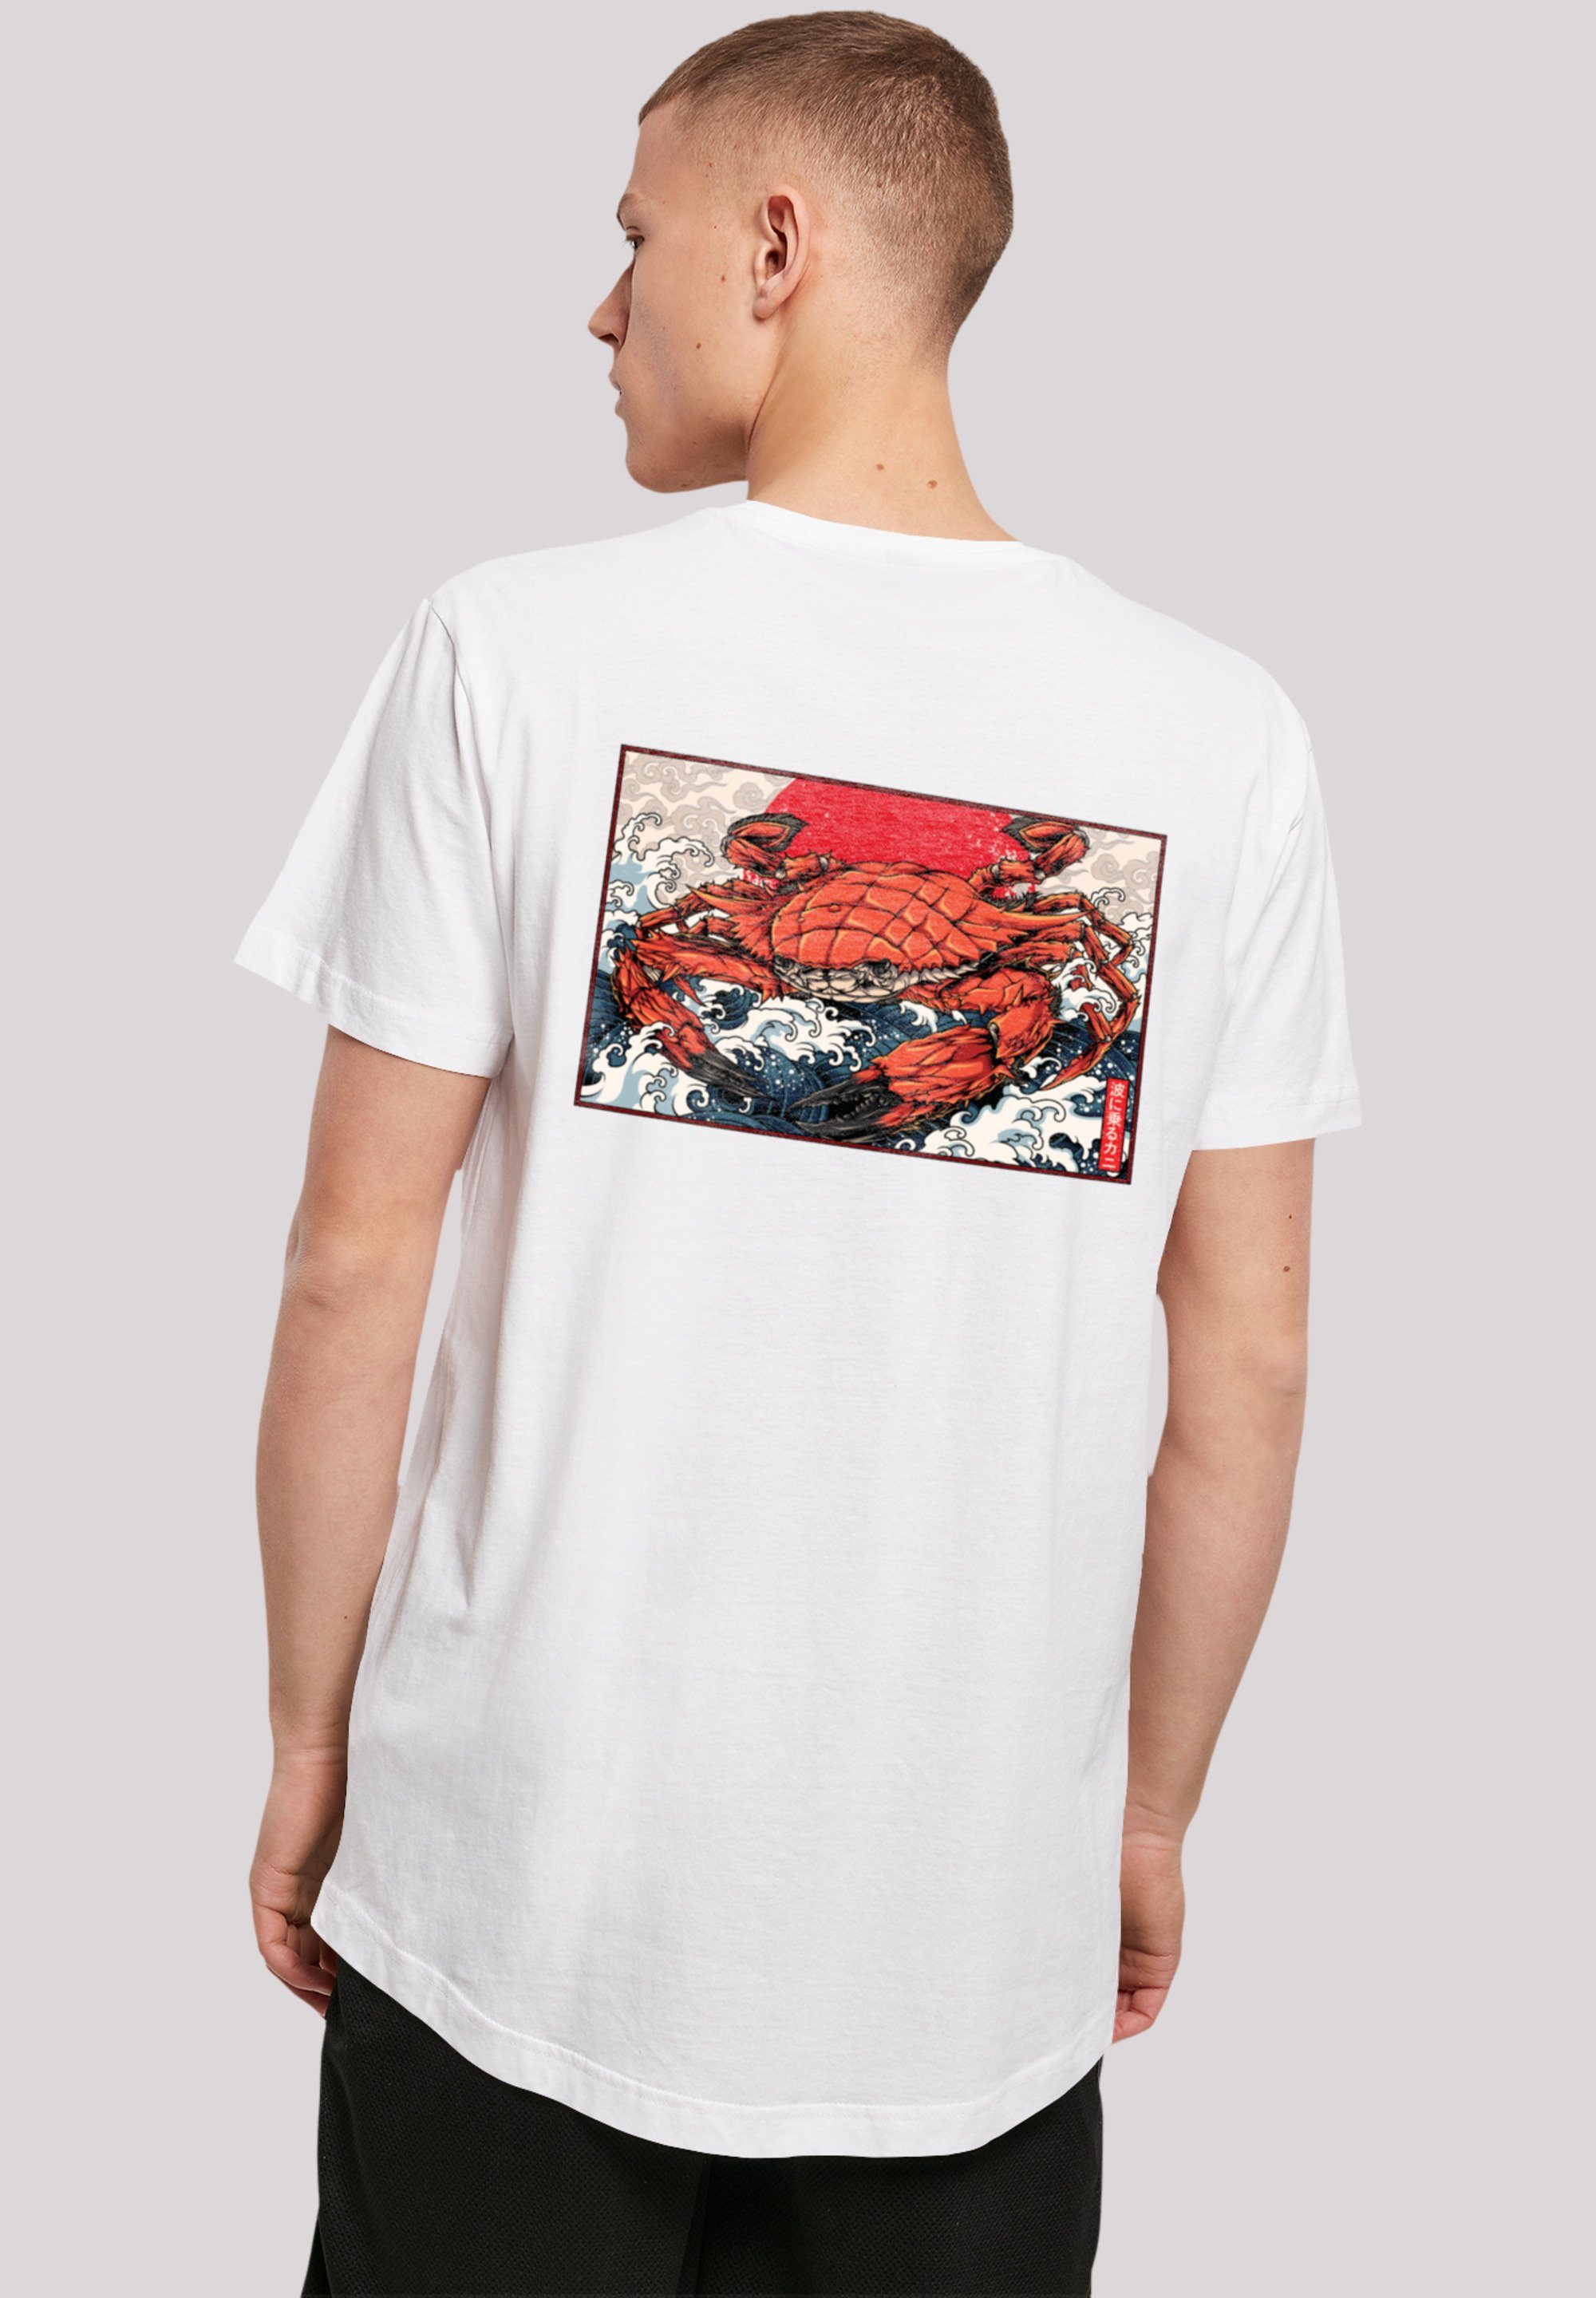 Japan F4NT4STIC Baumwollstoff Sehr Crab Print, mit Tragekomfort Welle hohem T-Shirt weicher